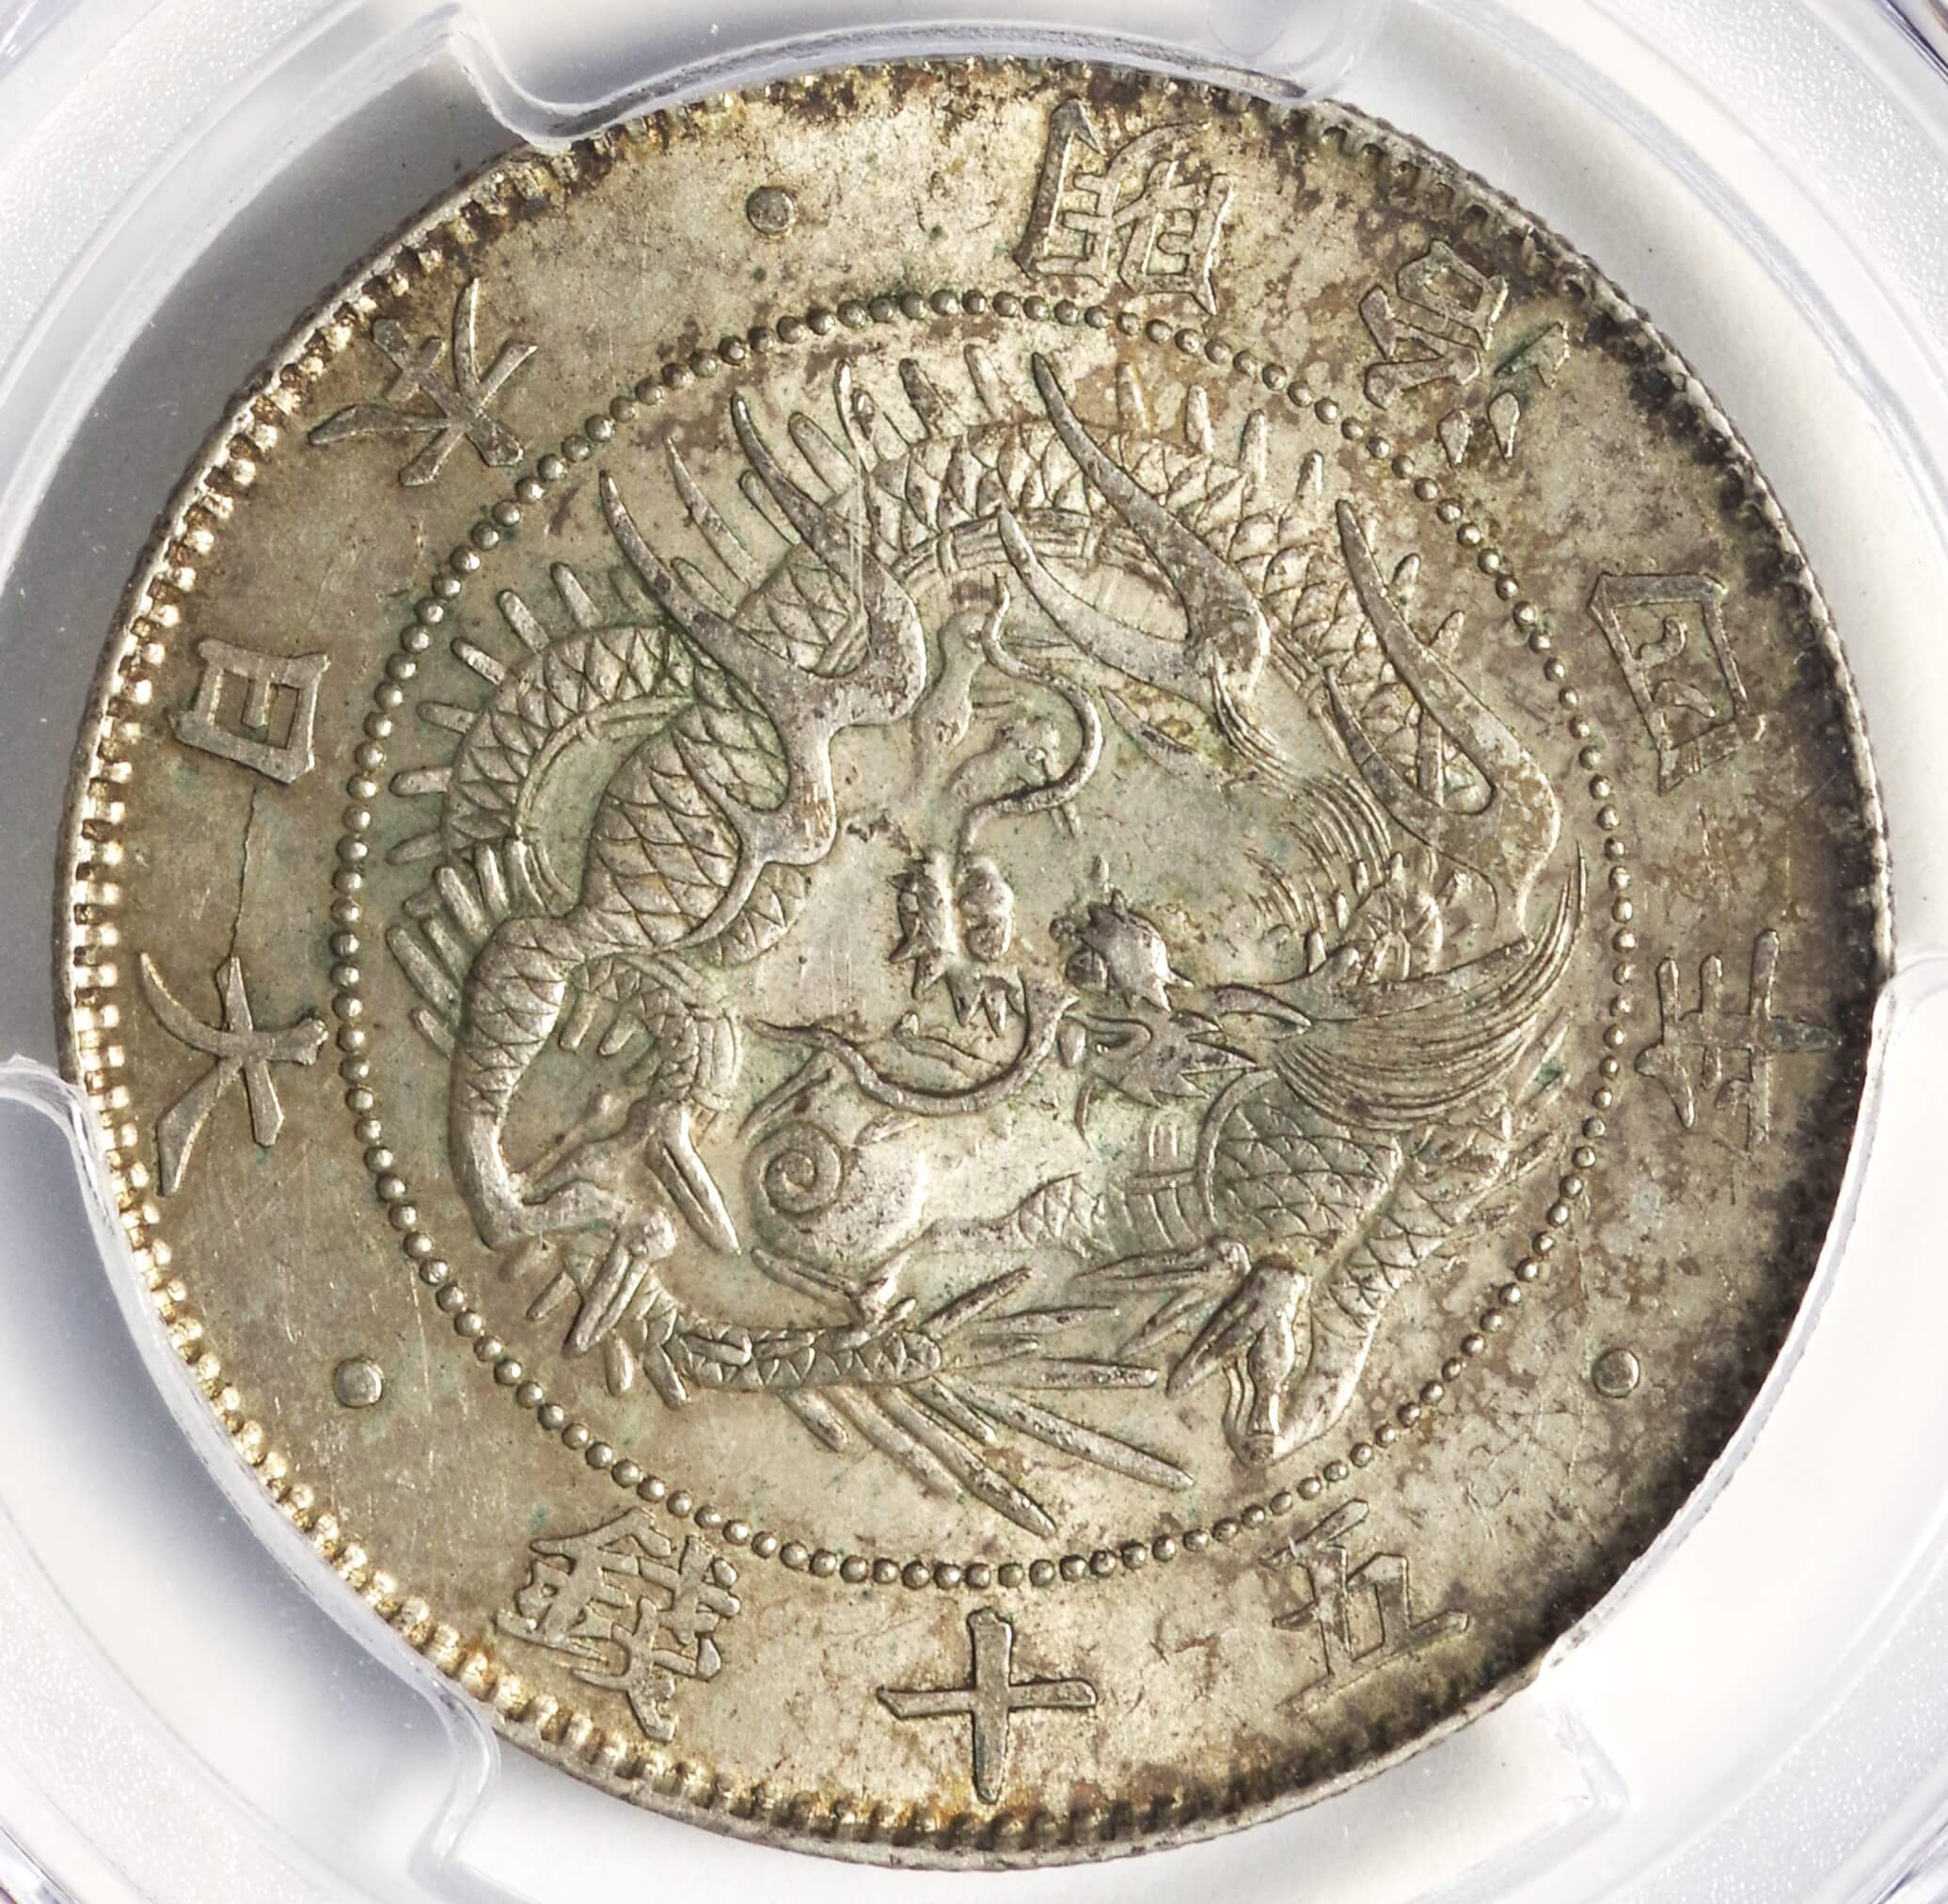 専用5銭銀貨 4明治年 後期(1871年) PCGS MS 62 - www